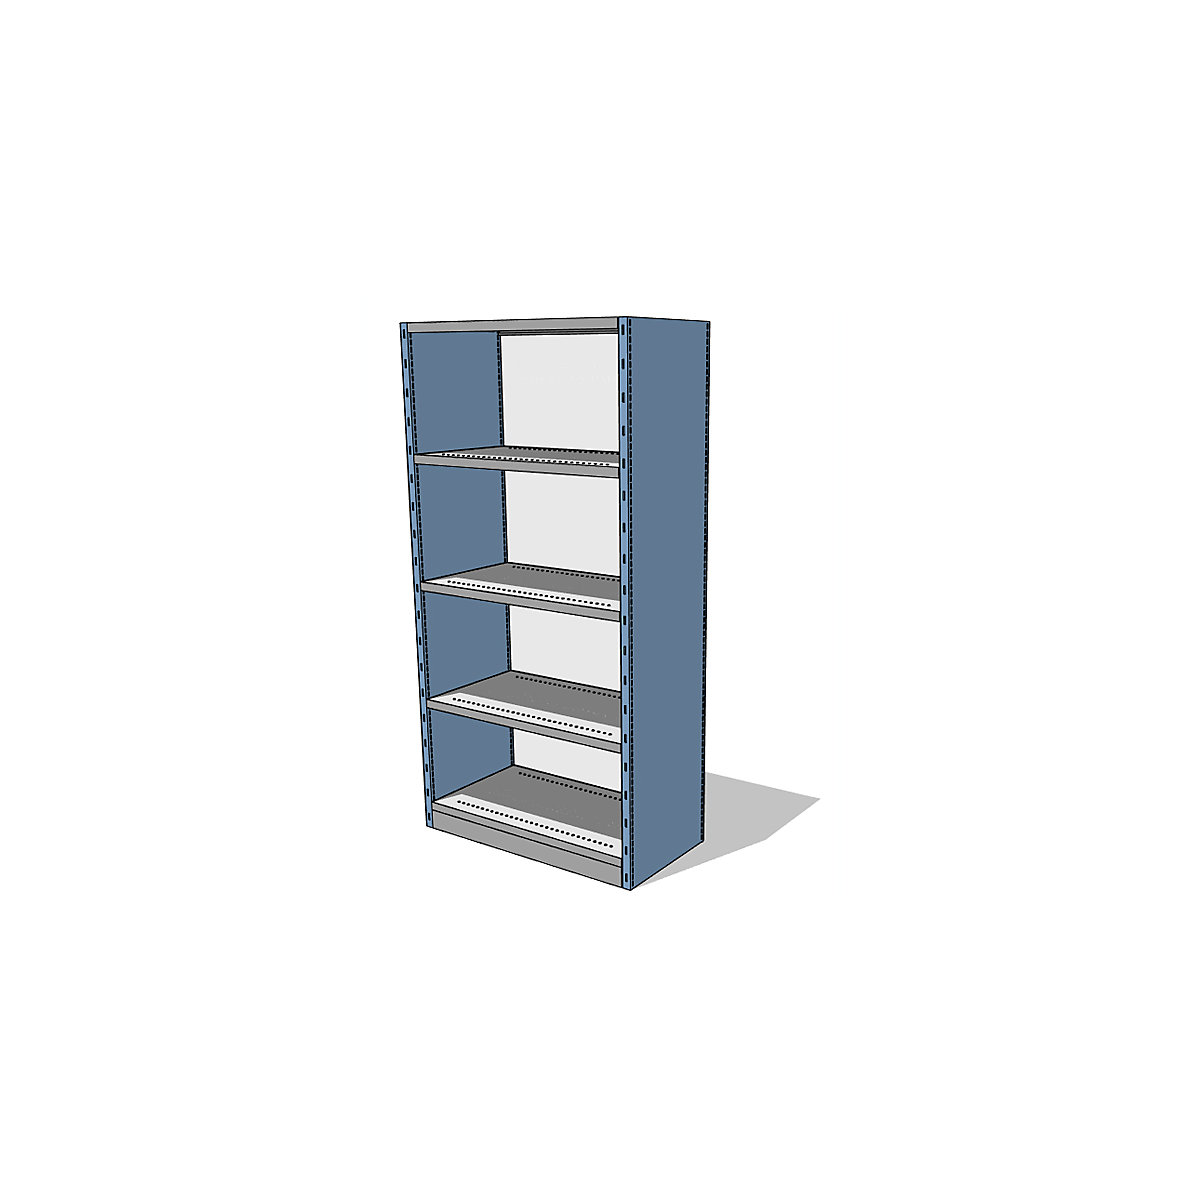 Sistema de estantes e armários com painéis laterais e traseiro, altura da estante 1960 mm, estante básica largura x profundidade 930 x 500 mm-5